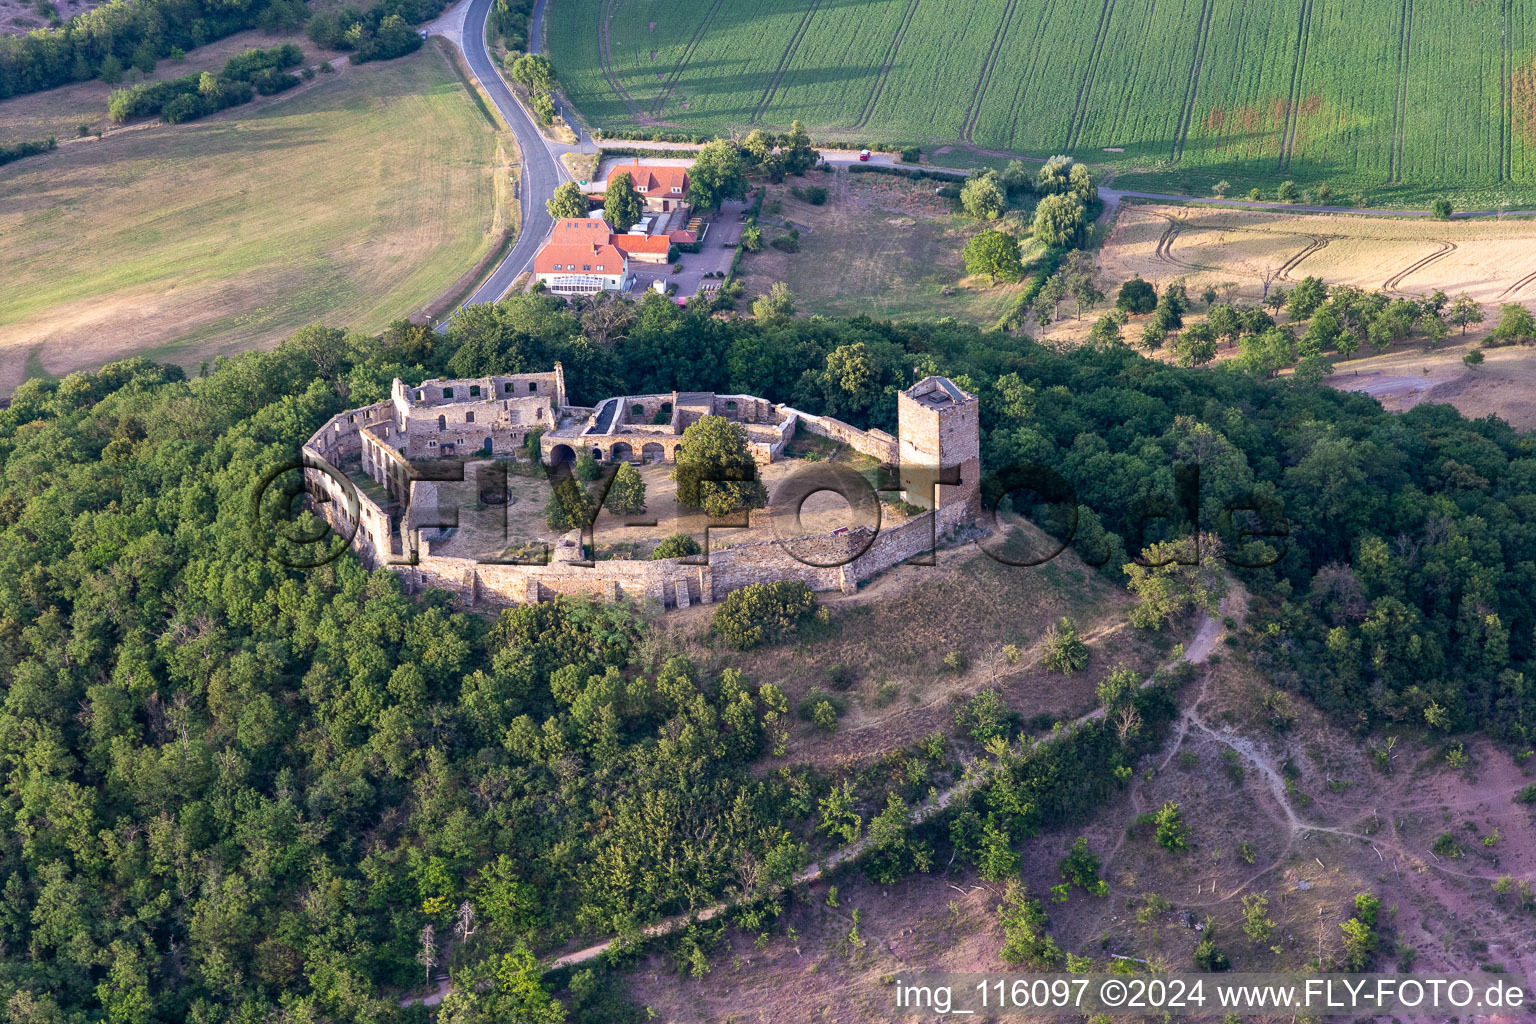 Ruines et vestiges des murs de l'ancien complexe du château et forteresse de Mühlburg dans le quartier de Mühlberg à Drei Gleichen dans le département Thuringe, Allemagne d'en haut